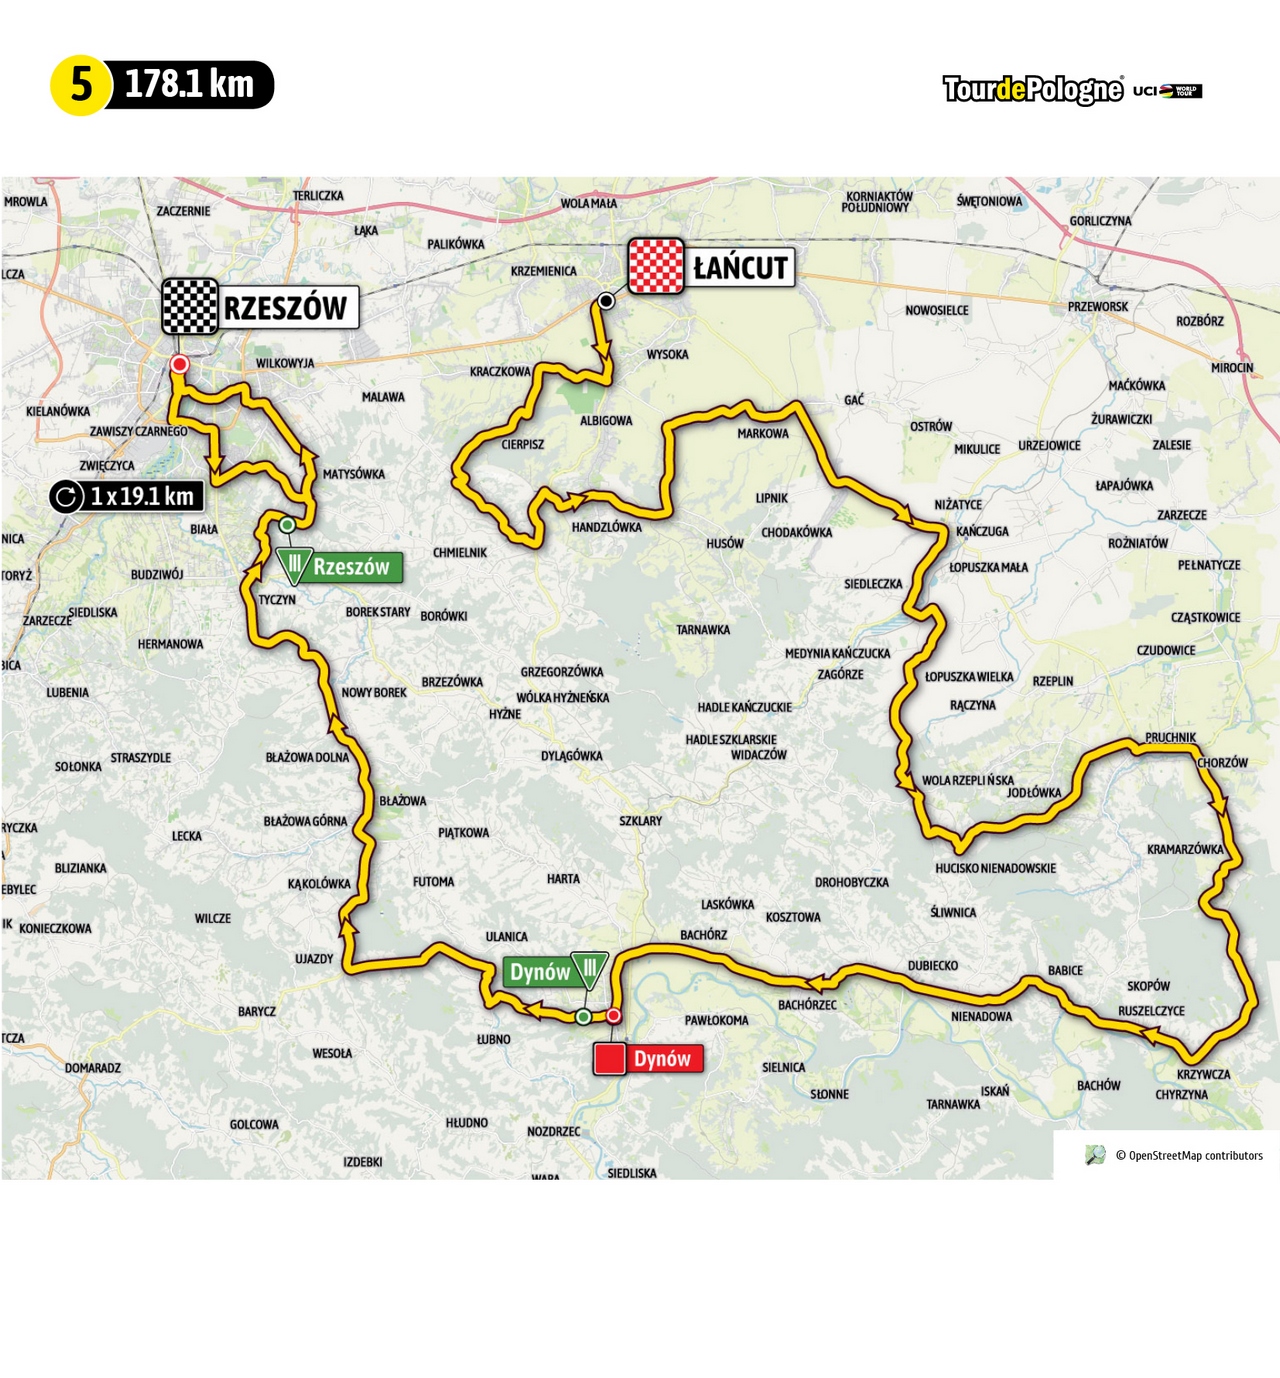 Etap 5 Tour de Pologne (źródło: tourdepologne.pl)